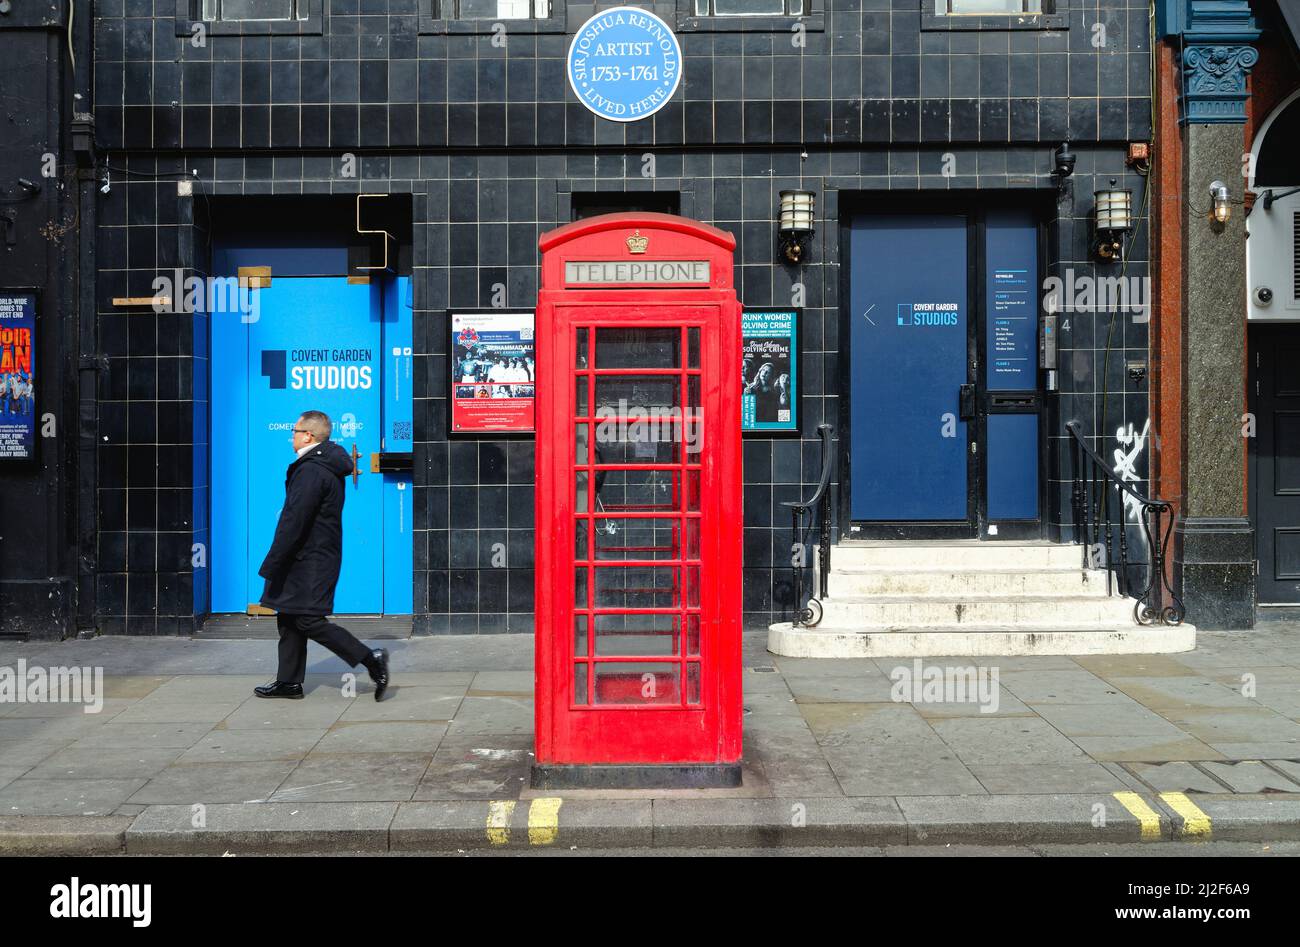 Un téléphone rouge britannique emblématique dans Great Newport Street, Covent Garden Central London, Angleterre, Royaume-Uni Banque D'Images